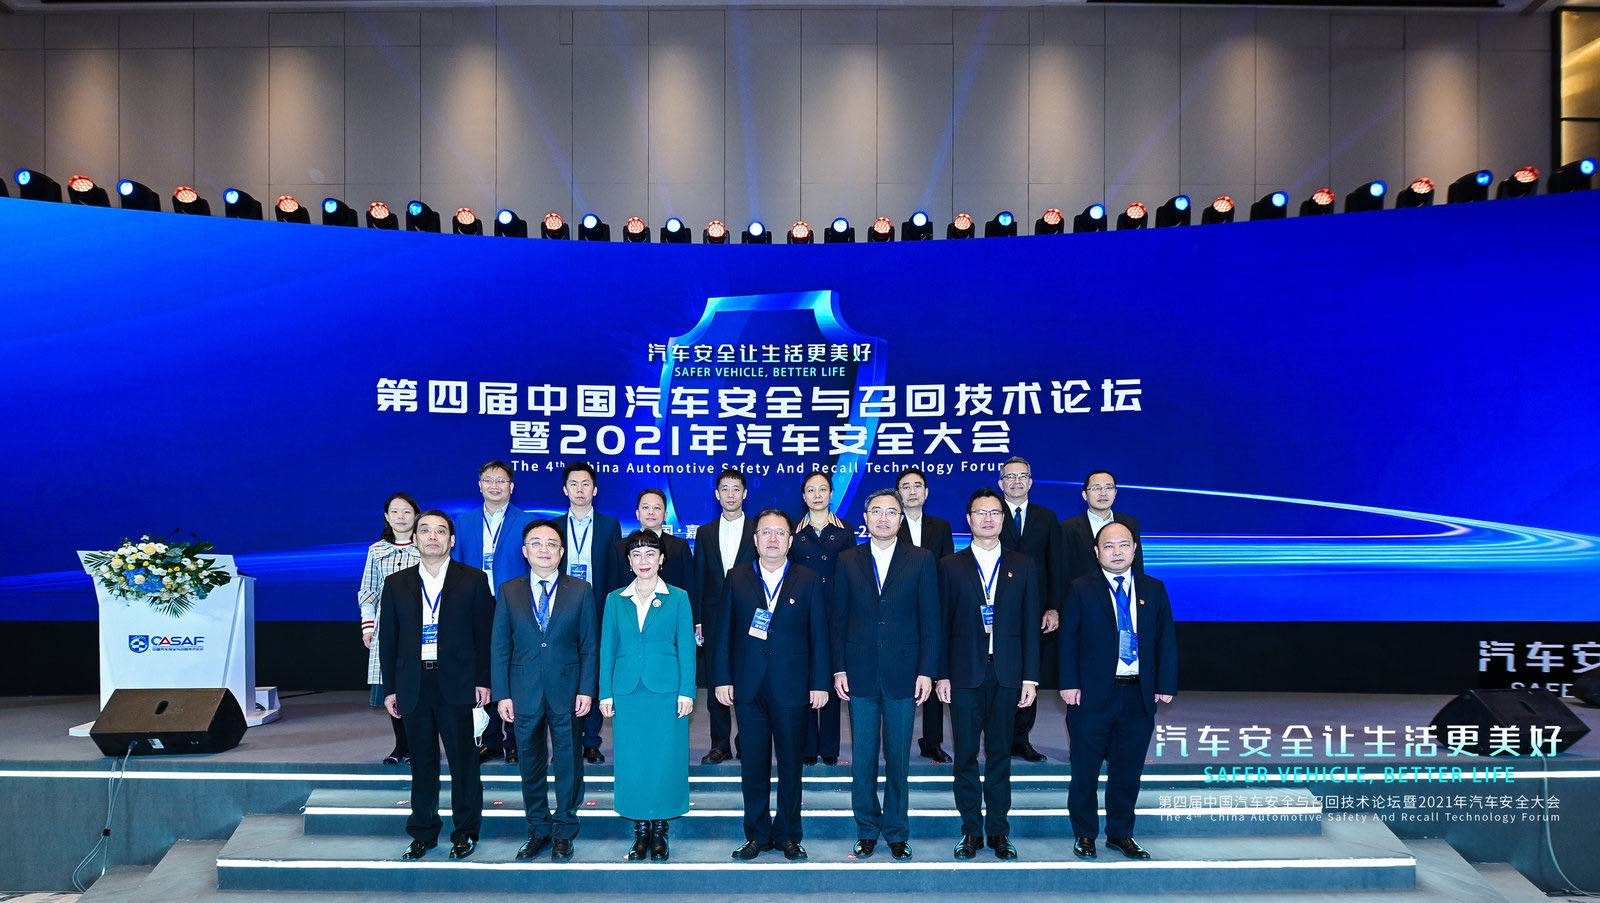 第四届中国汽车安全与召回技术论坛暨2021年汽车安全大会在嘉兴